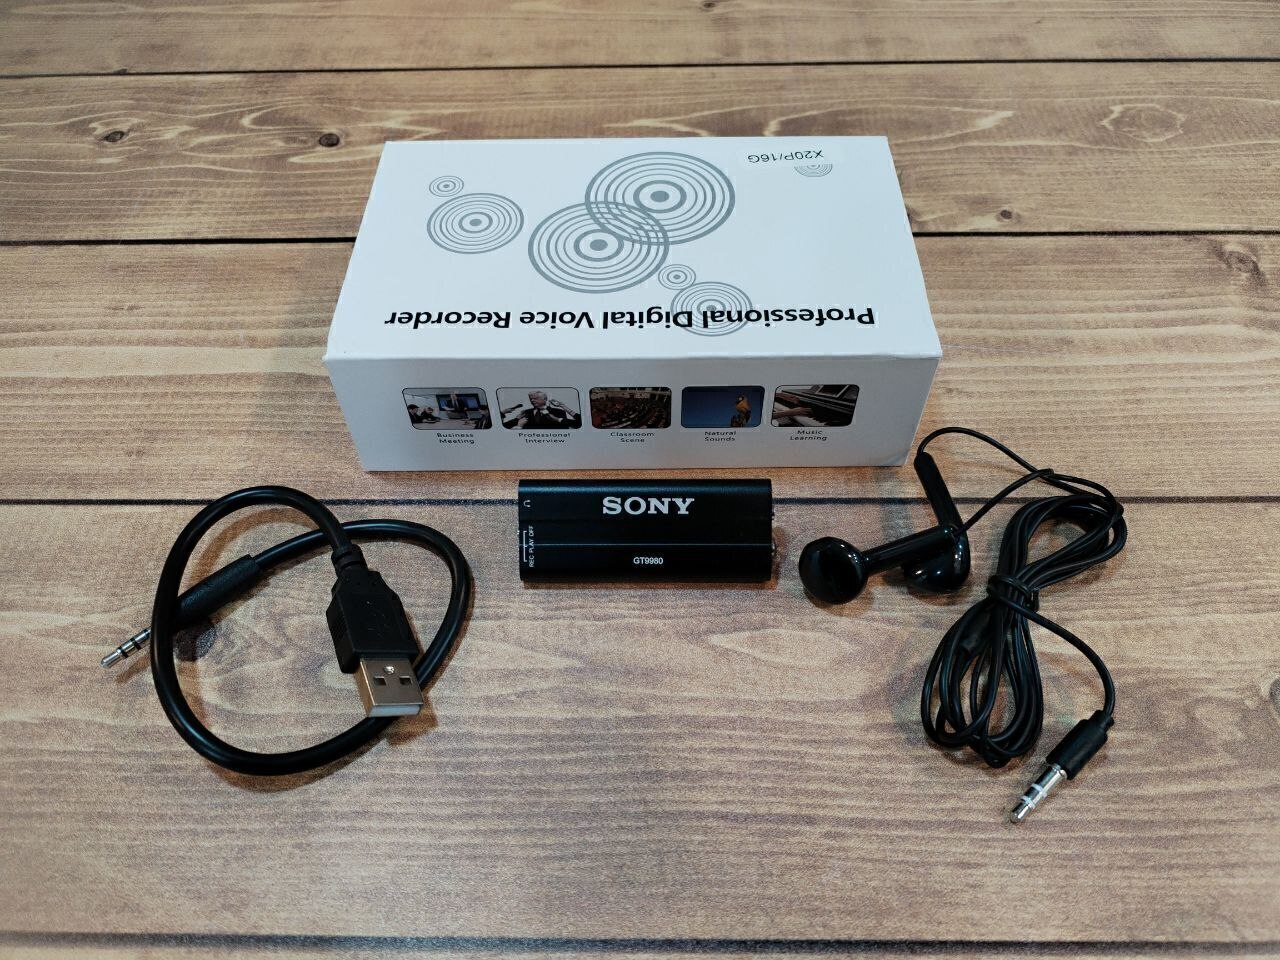 دستگاه شنود ضبط صدا سونی مدل SONY GT9980